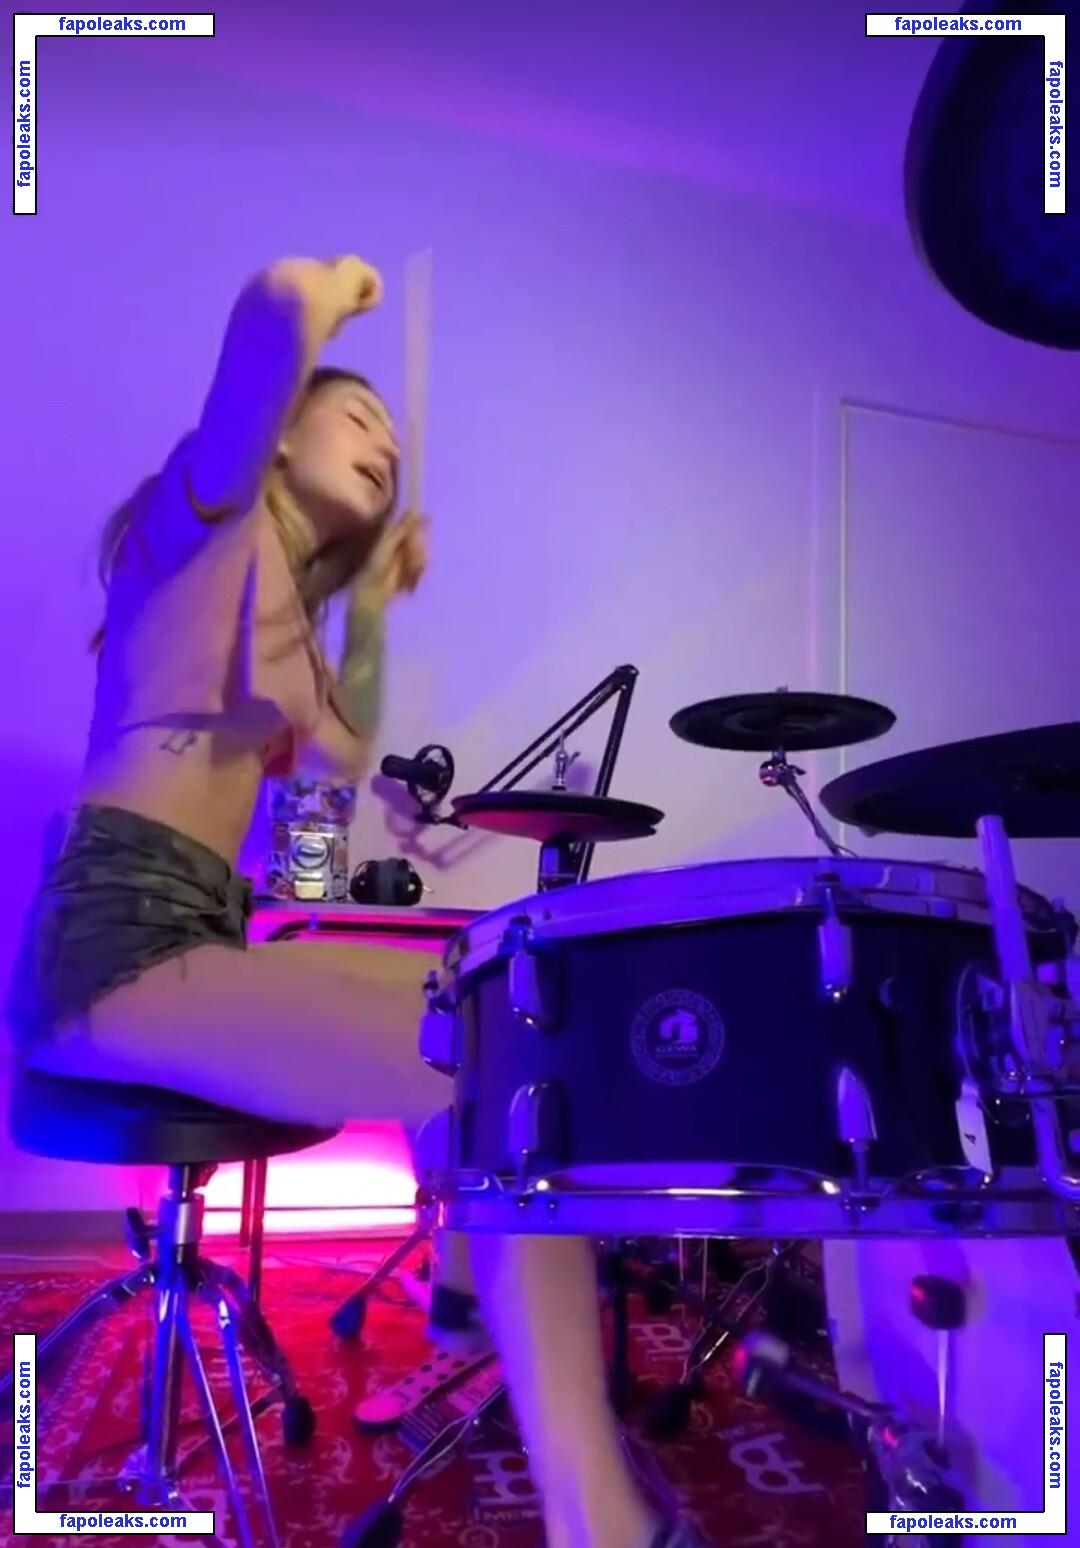 Kristina Rybalchenko / Kriss Drummer / kriss_drummer nude photo #0012 from OnlyFans